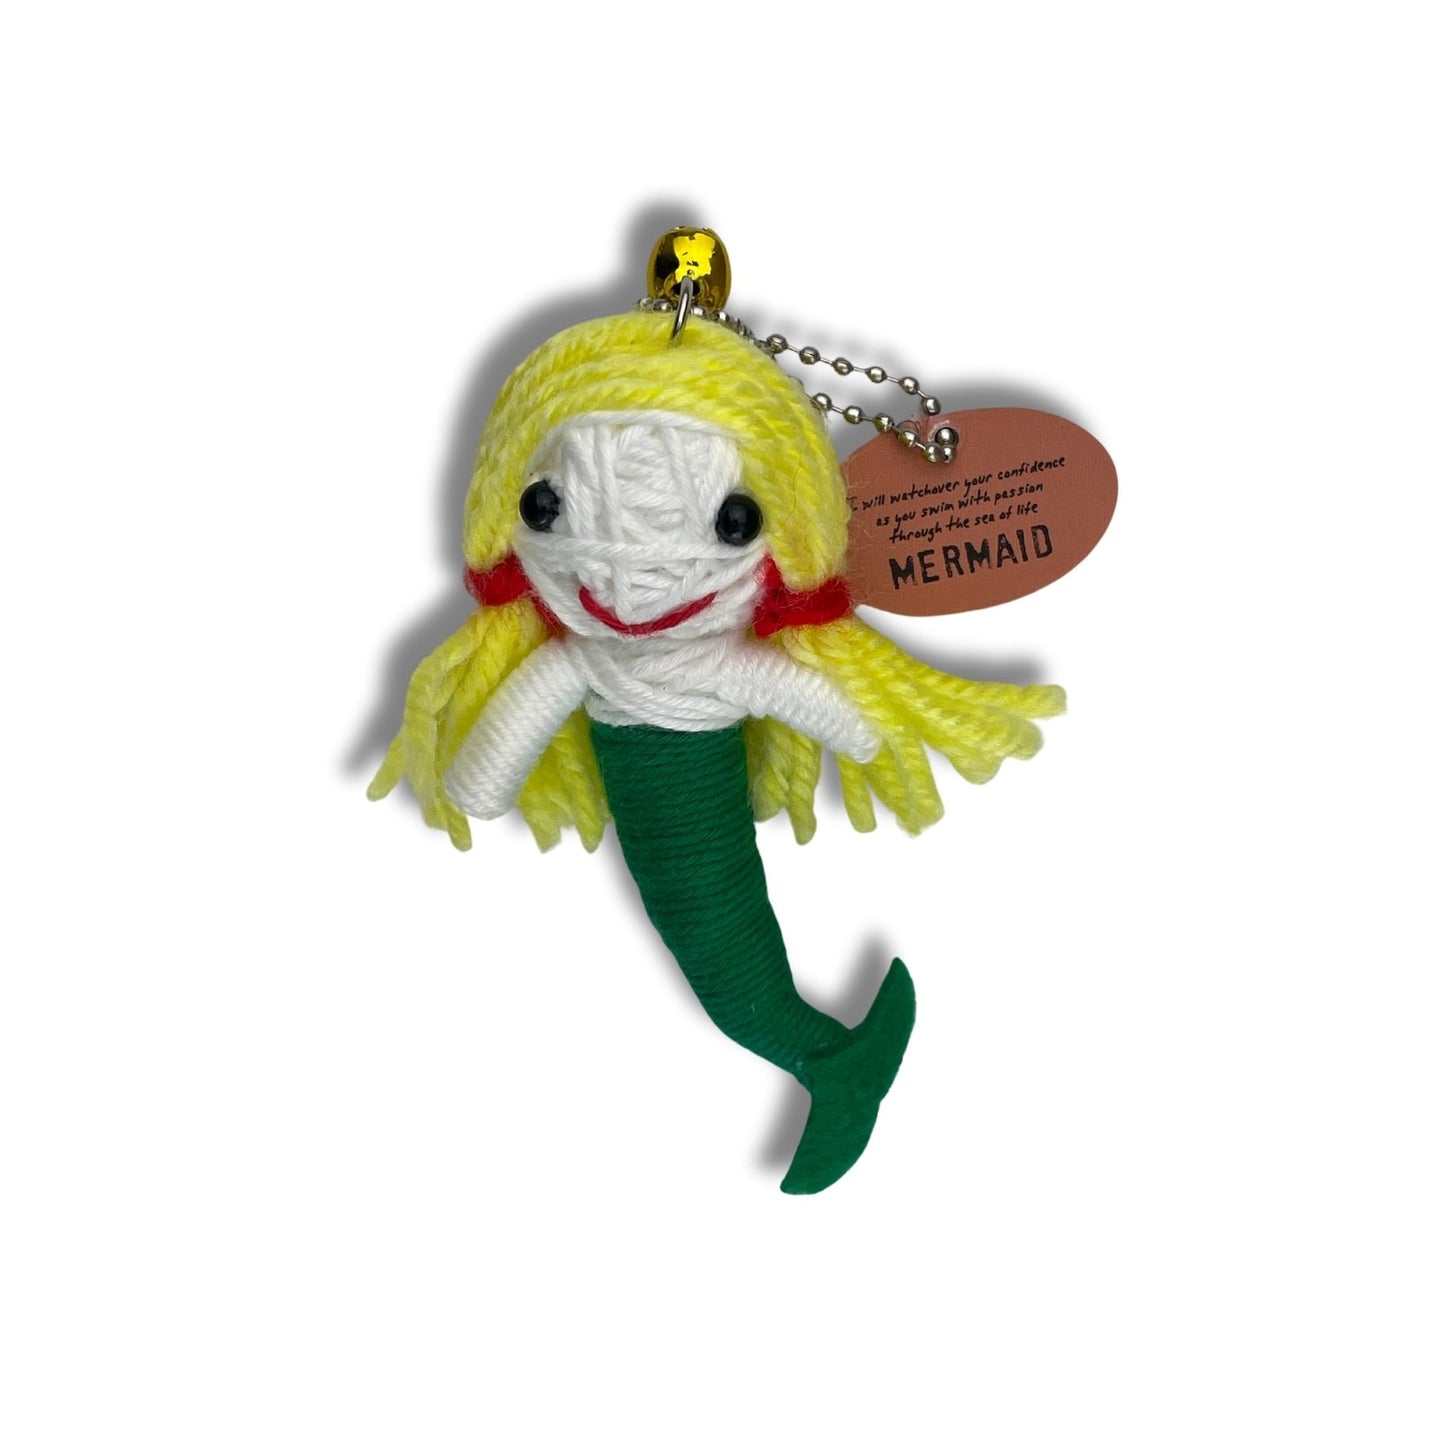 Watchover Voodoo Doll - Mermaid